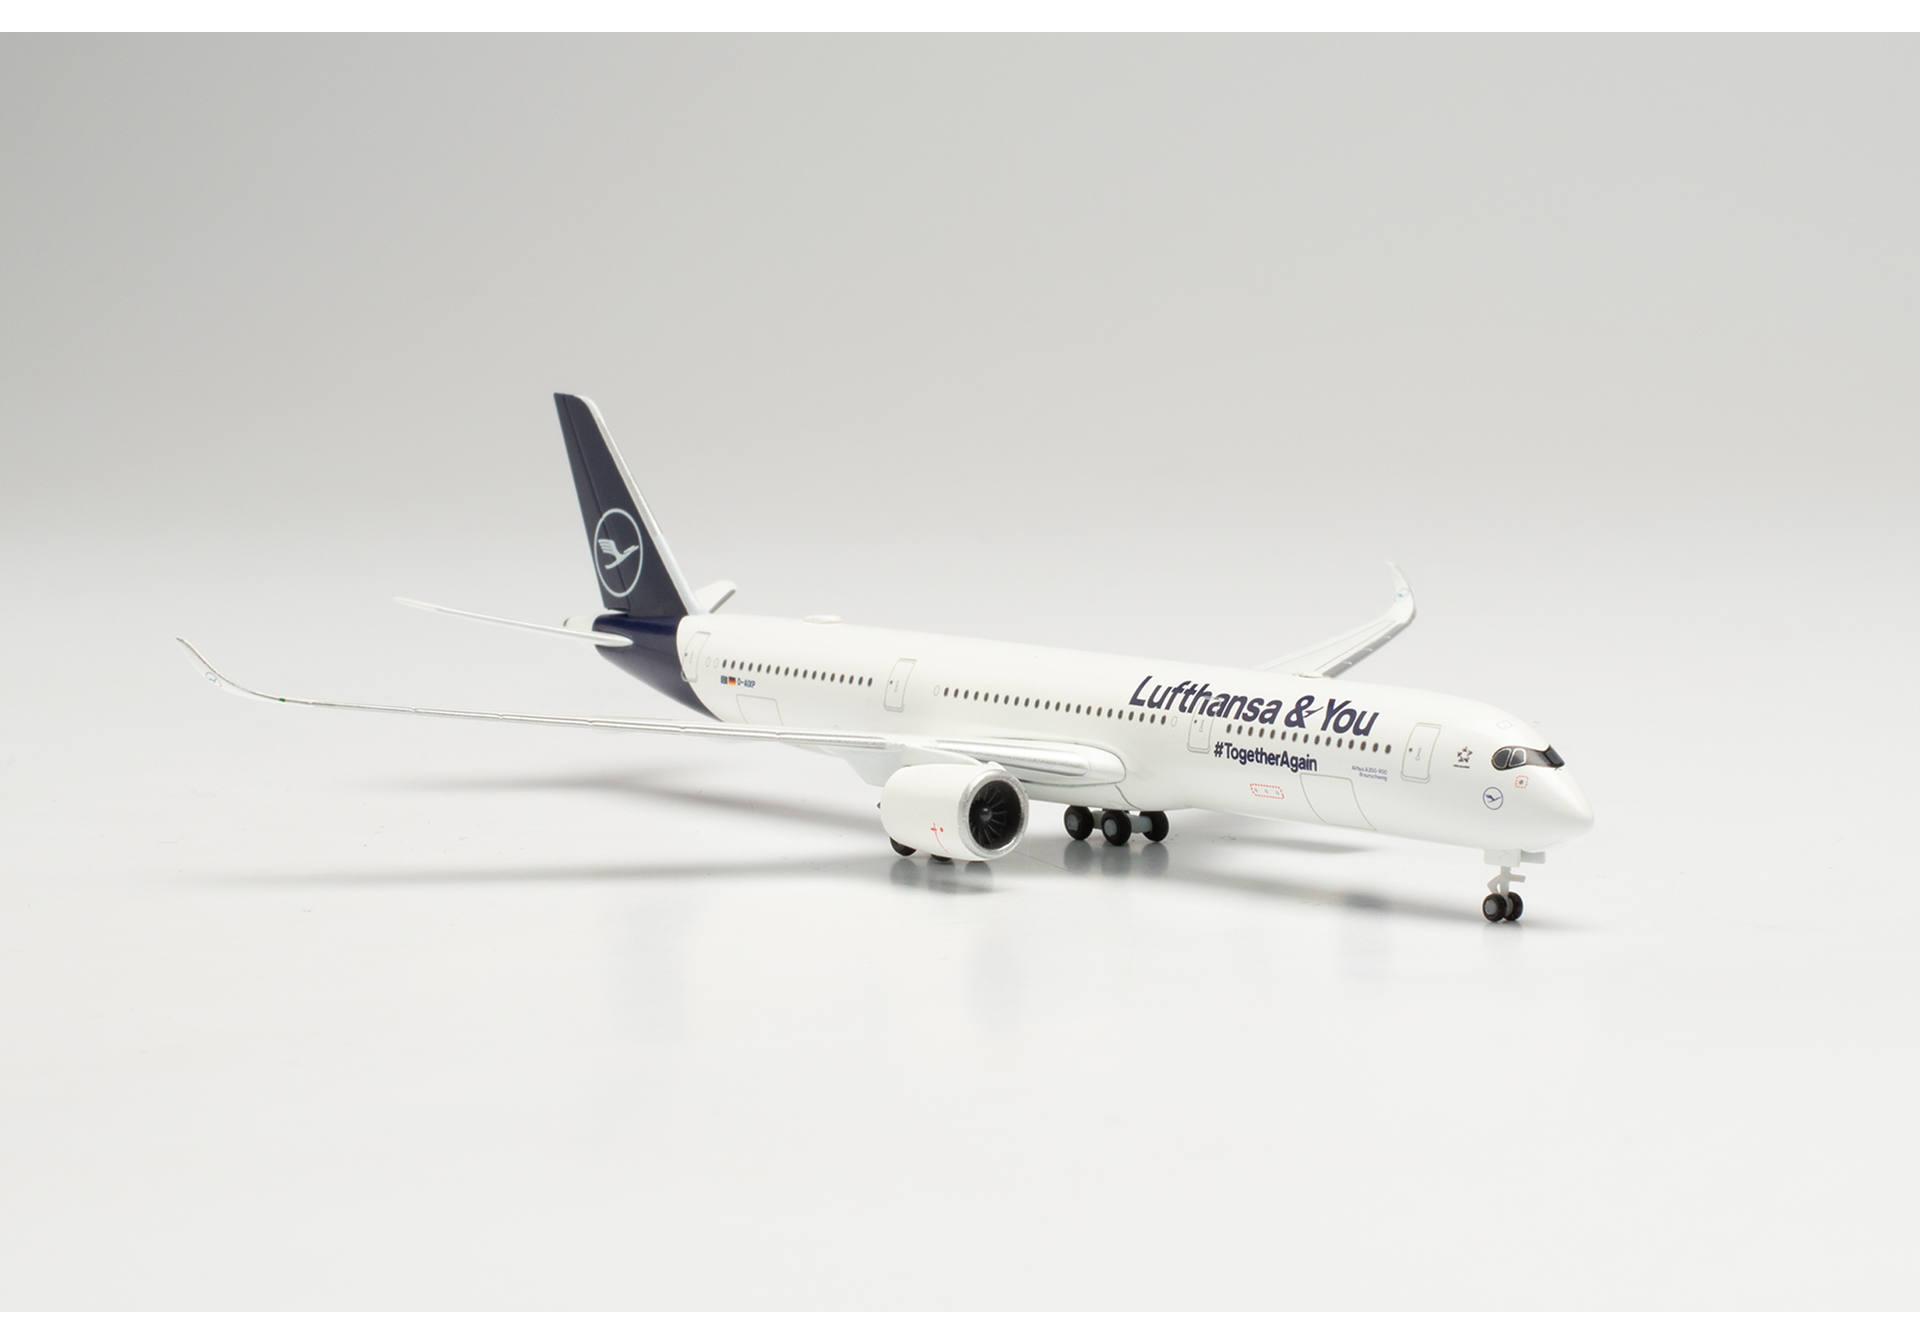   Lufthansa Airbus A350-900 Lufthansa & You  D-AIXP, 1:500 herpa 536066. # 4 hobbyplus.ru